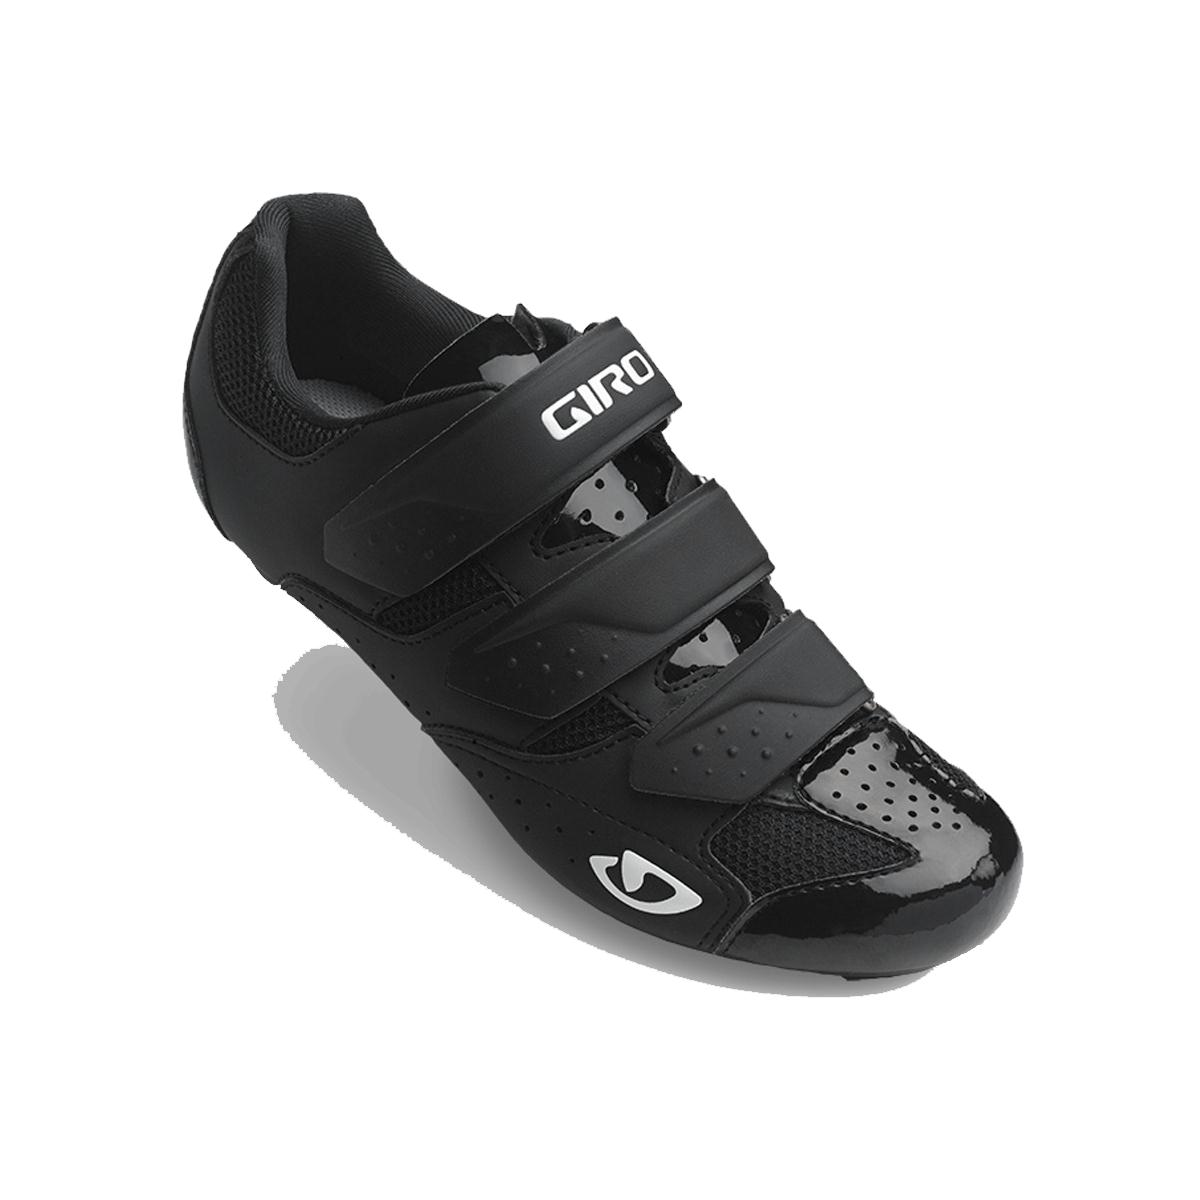 GIRO Techne Womens Road Cycling Shoes 2018 Black 42